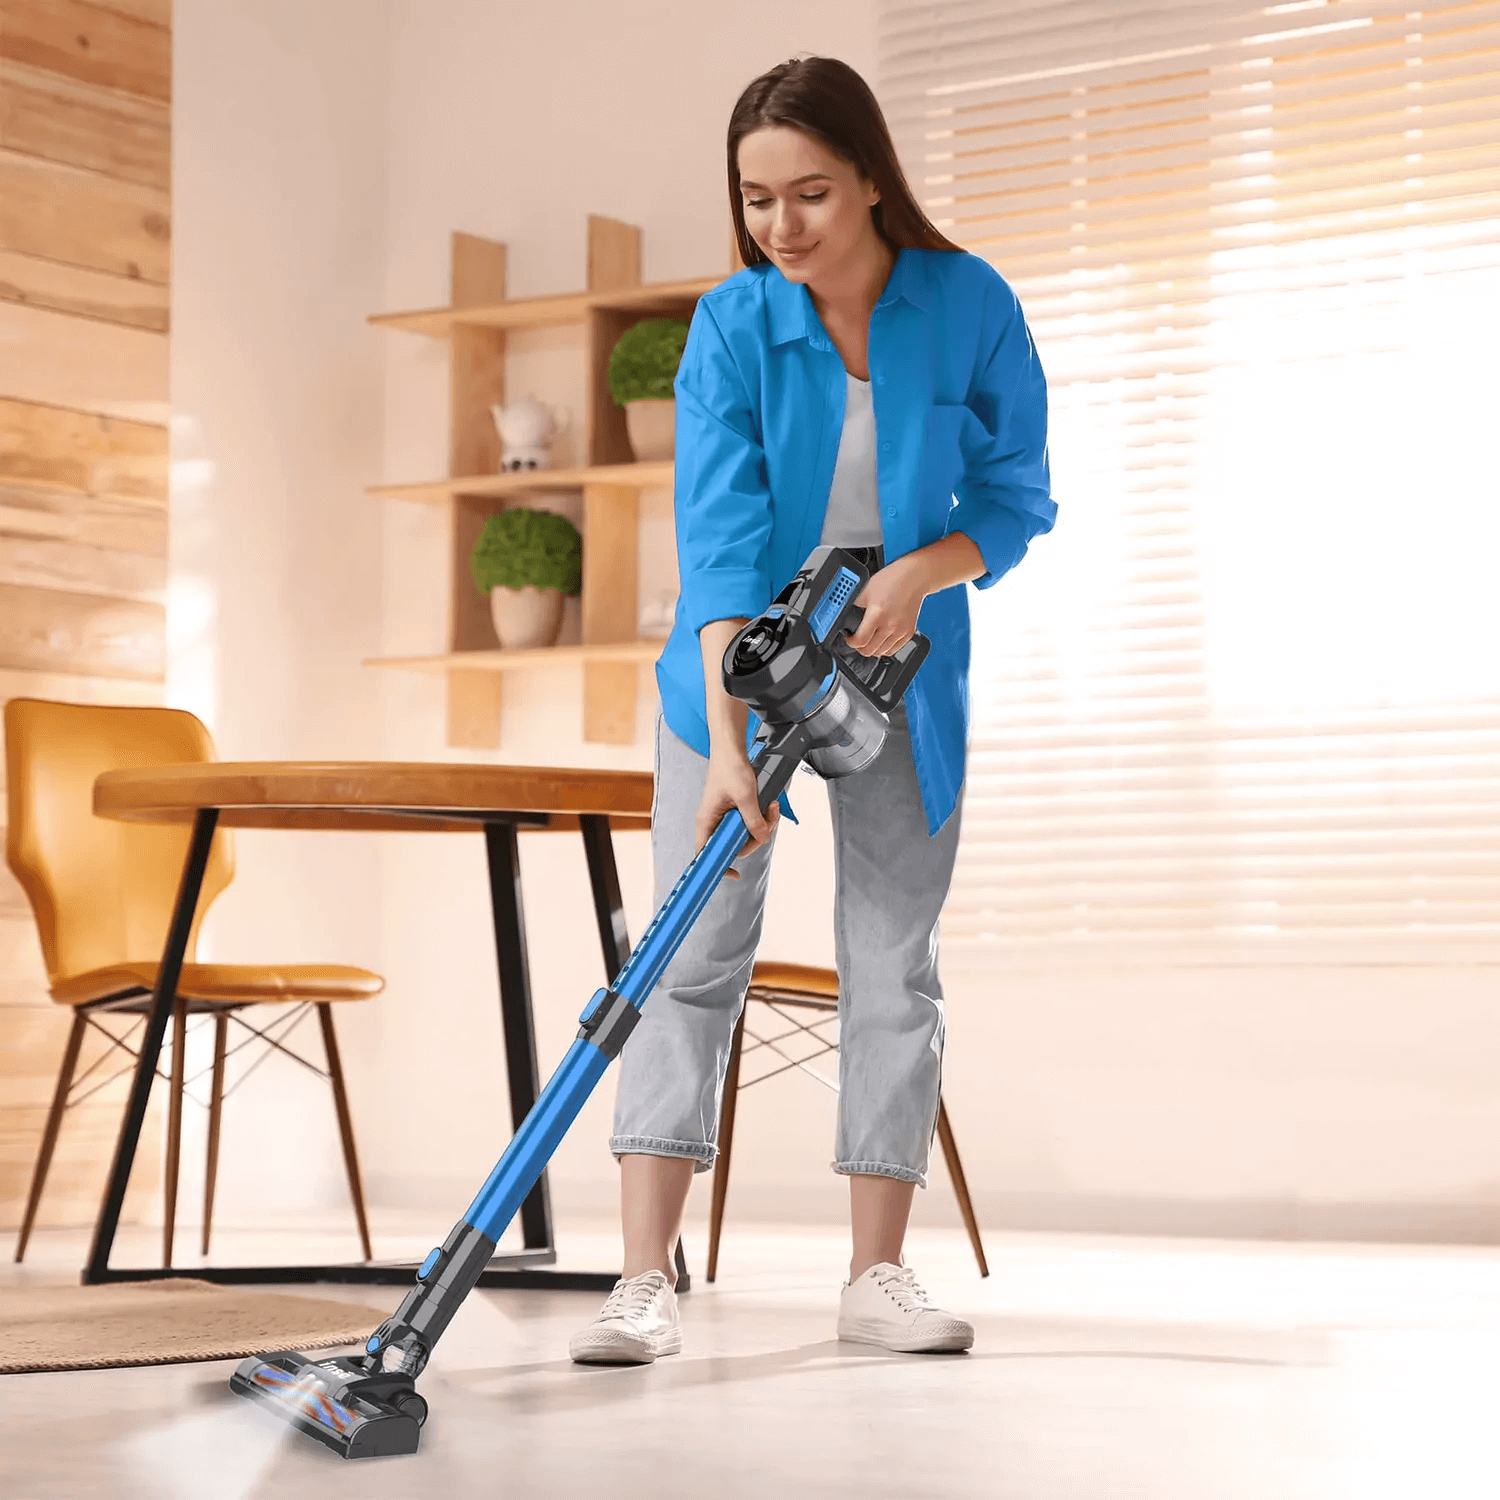 Cordless Vacuum Cleaner